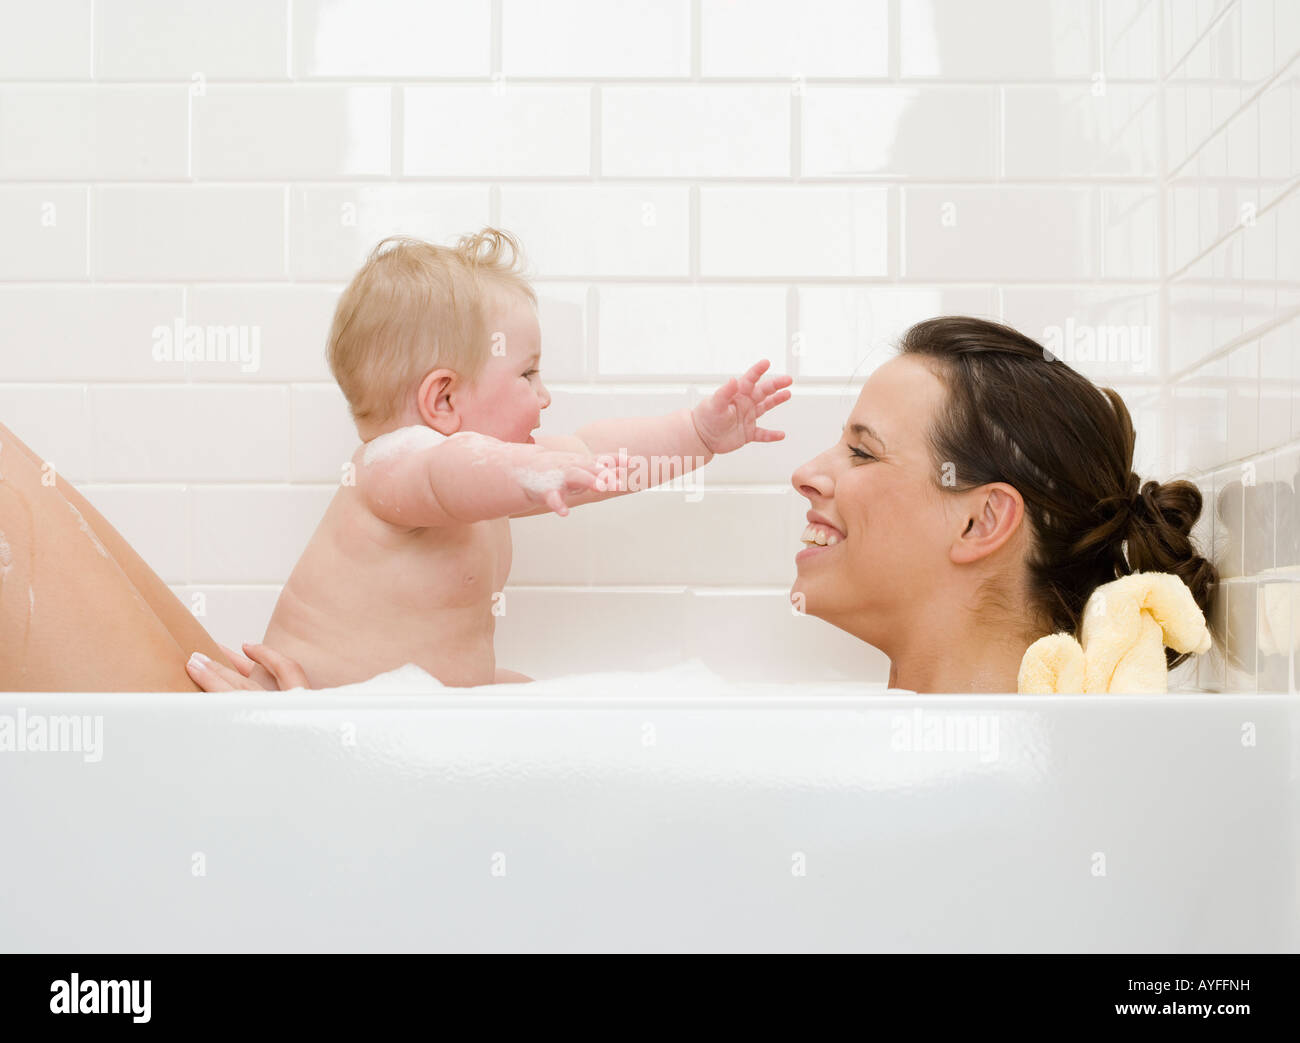 Зашел к маме в ванную. Мама купает ребенка. Совместное купание с малышом. Совместное купание с грудничком. Совместное купание с грудничком в ванной.